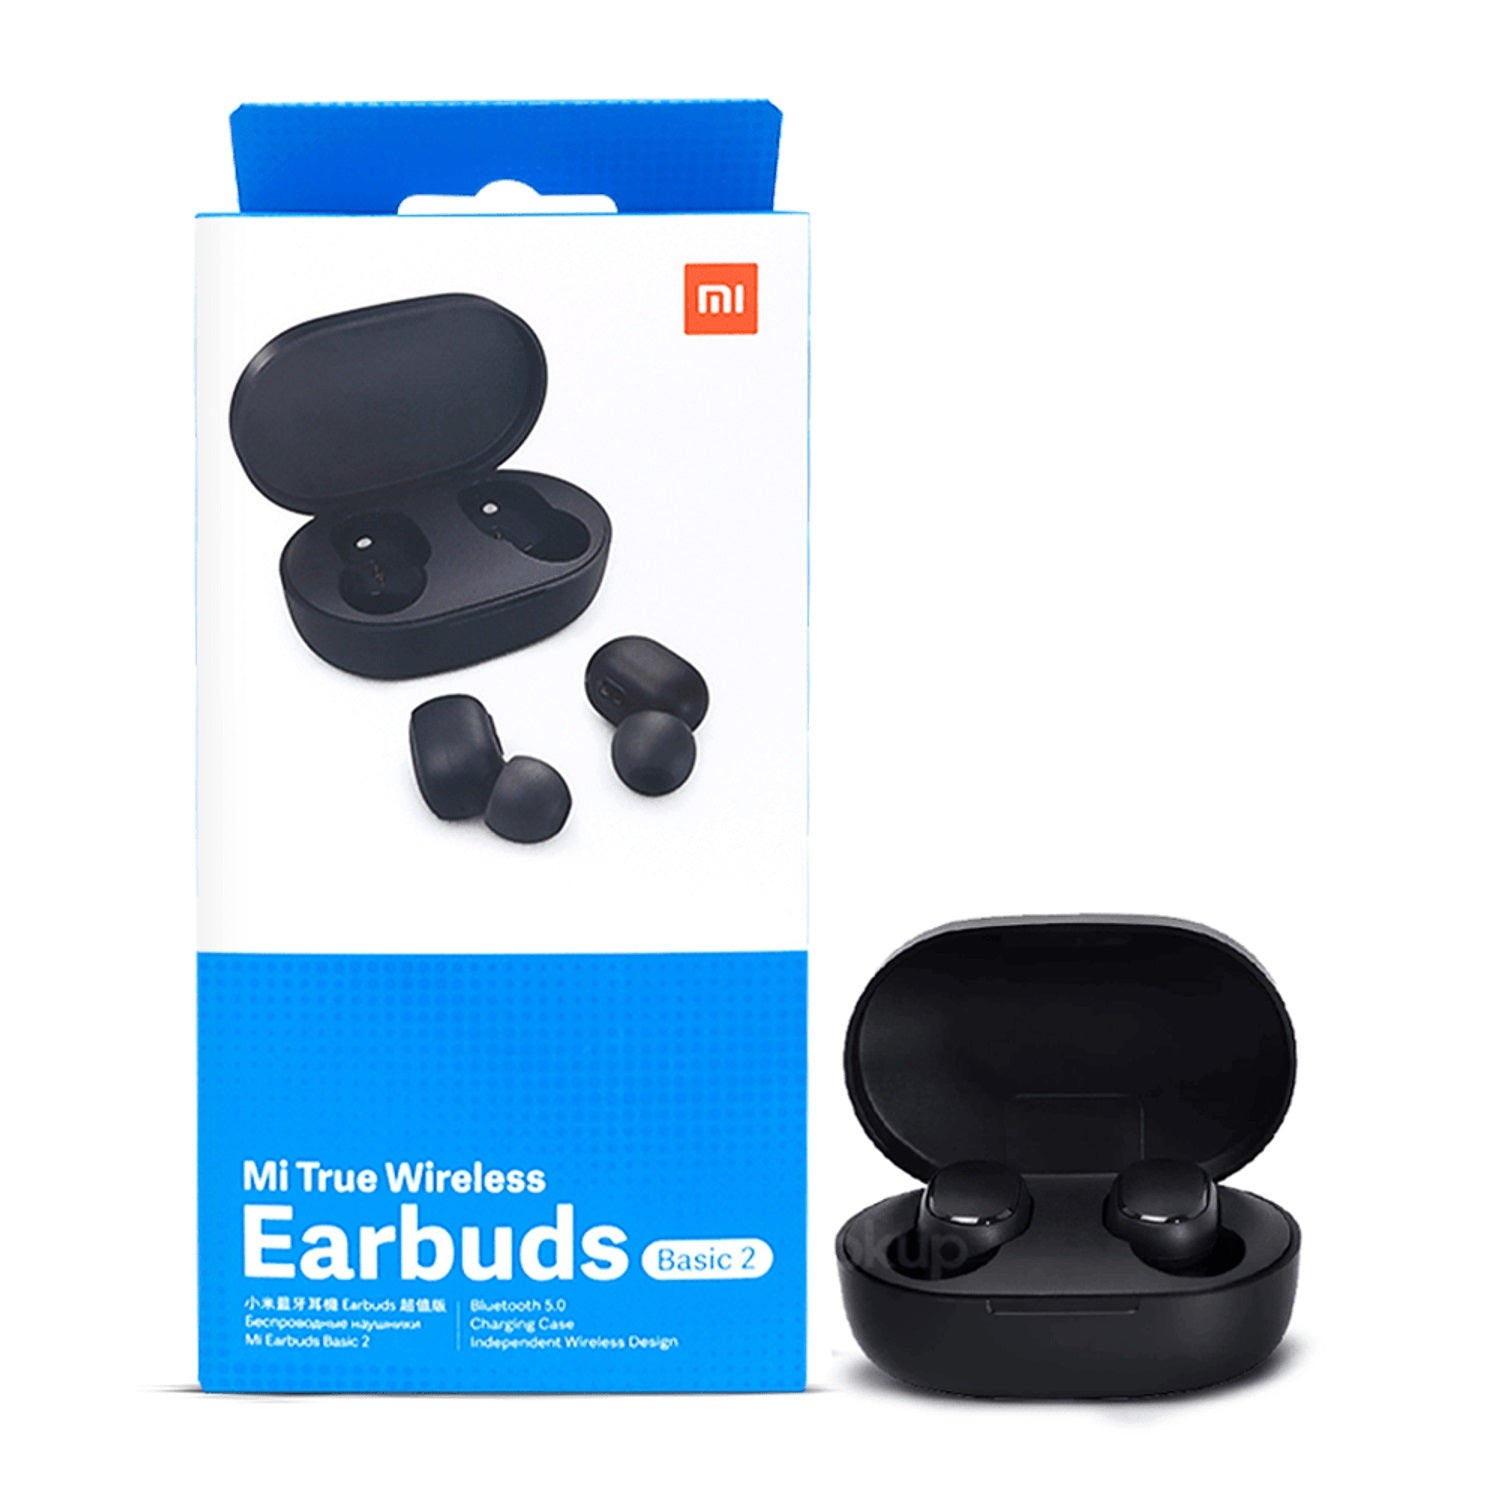 Mi True Wireless Earbuds Basic 2 - eShop Now